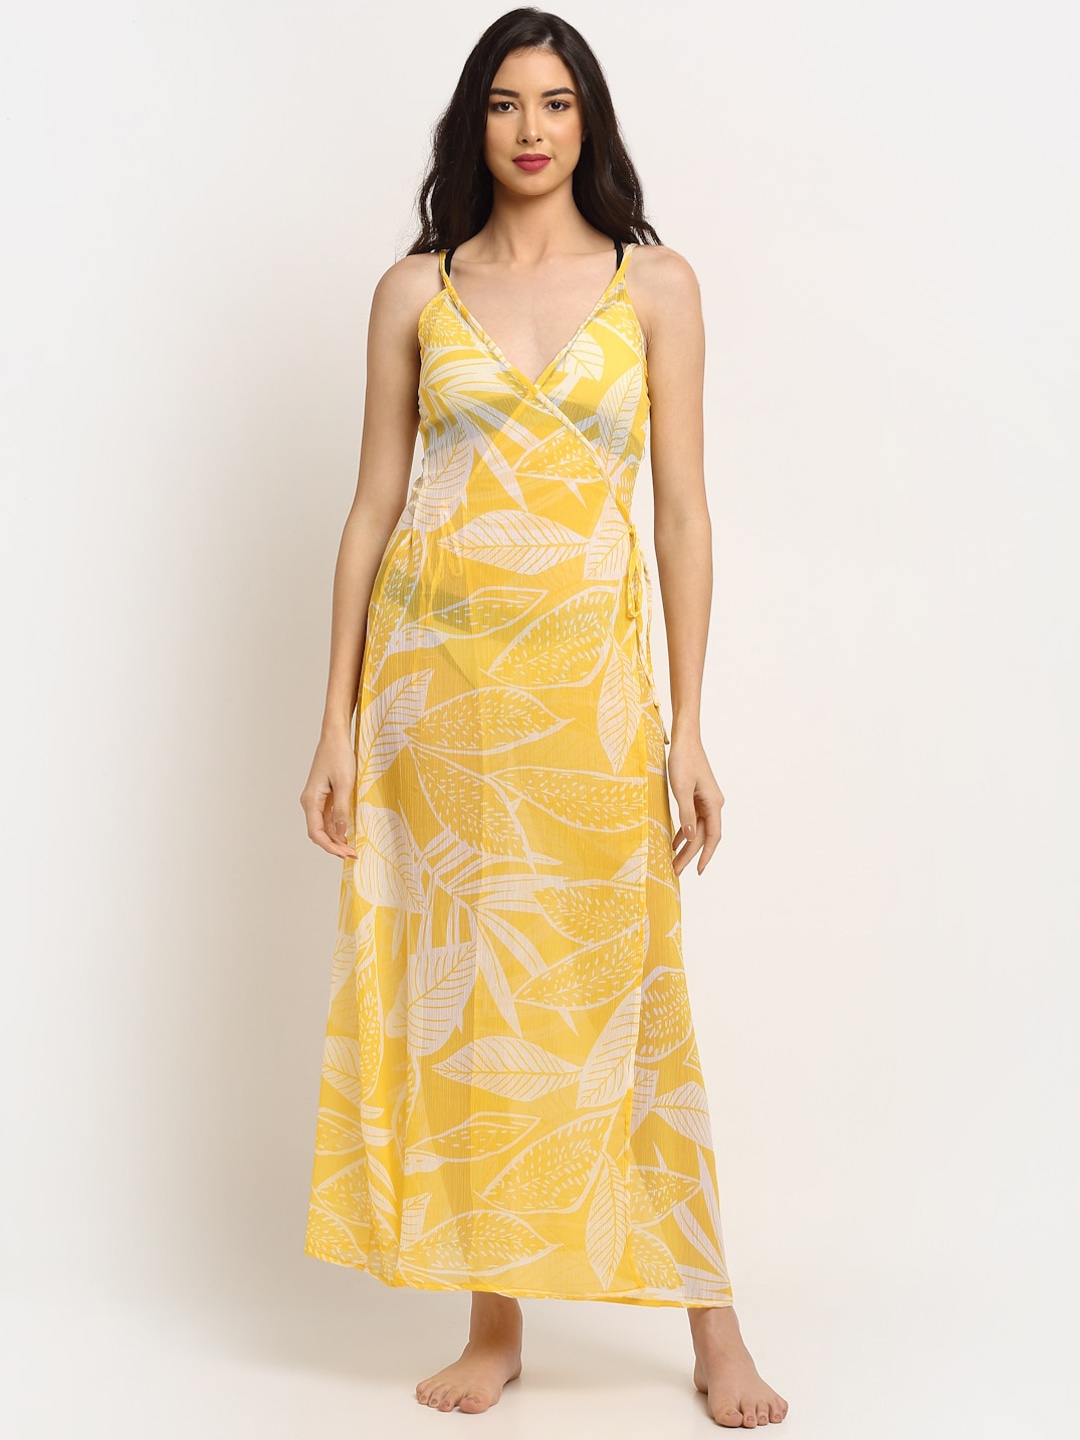 EROTISSCH Women Yellow & White Printed Beachwear Cover-Up Dress Price in India